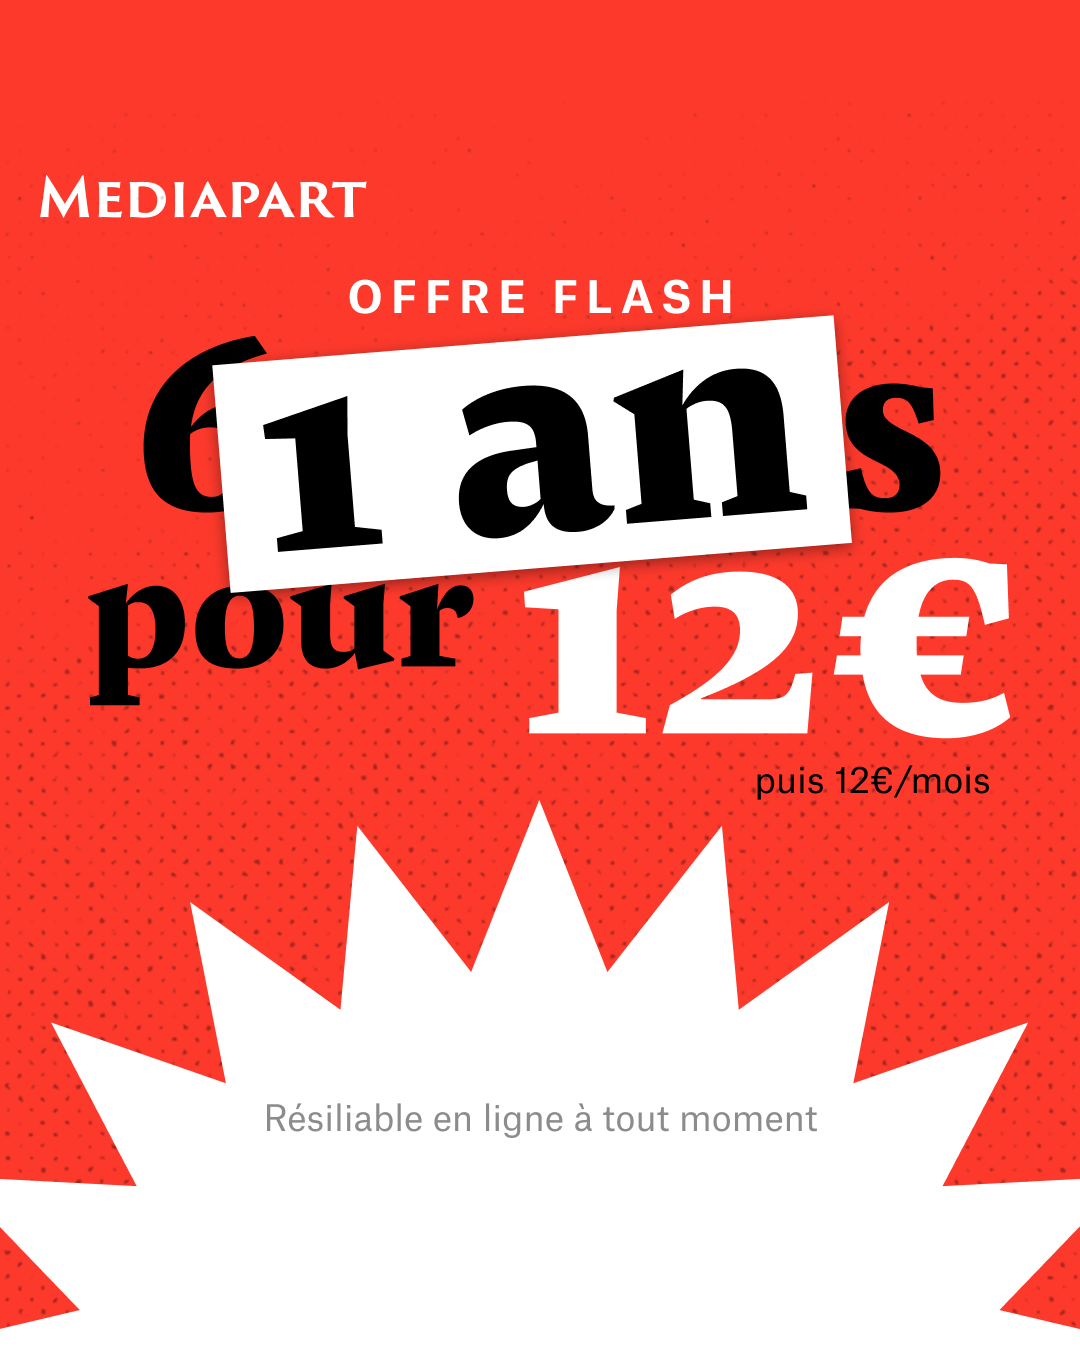 Offre Flash : 1 an pour 12€. Offre résiliable en ligne à tout moment.